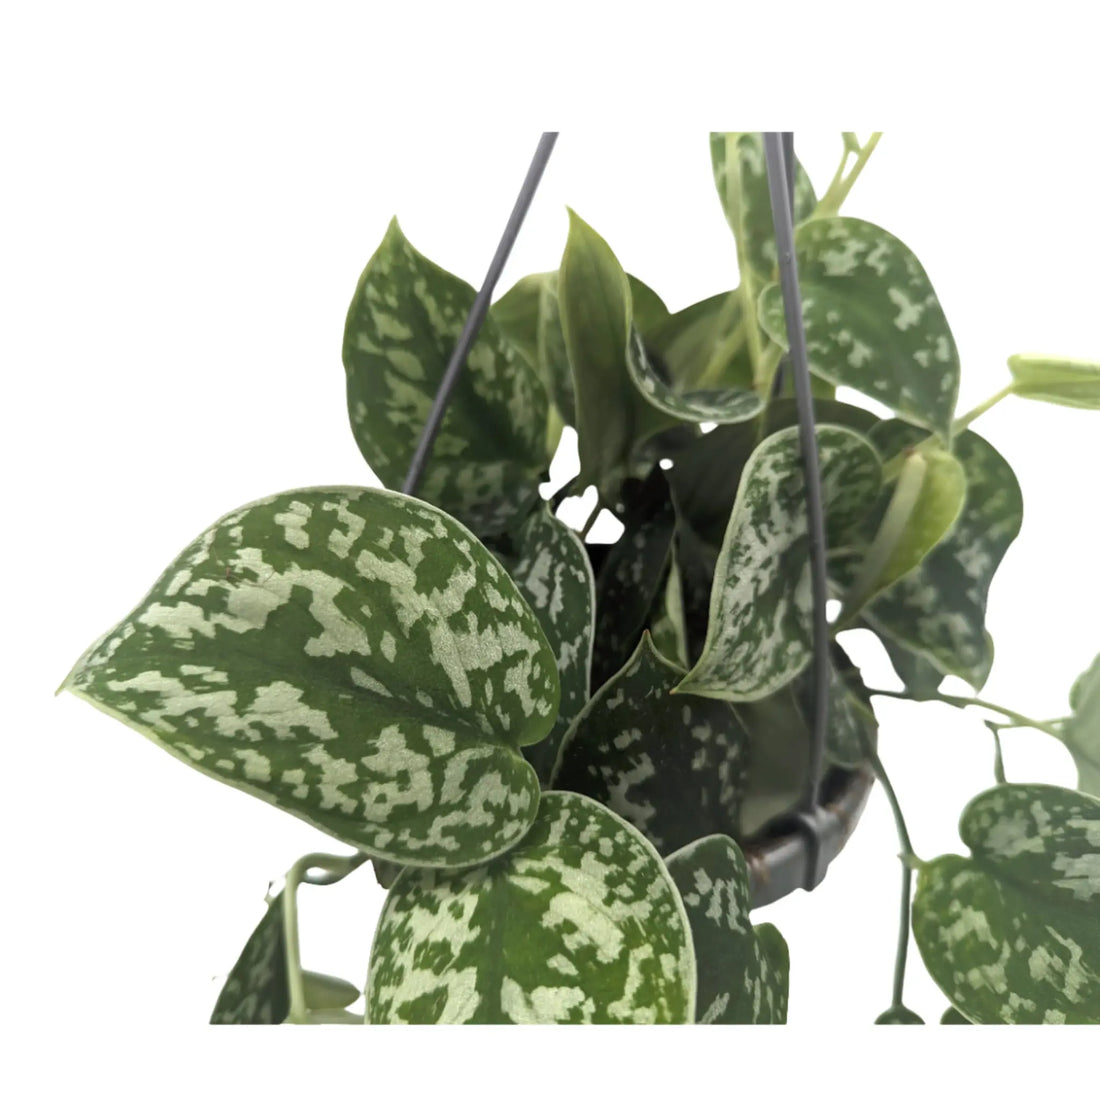 Scindapsus Pictus Argyraeus - Satin Pothos Hanging Plant Leaf Culture